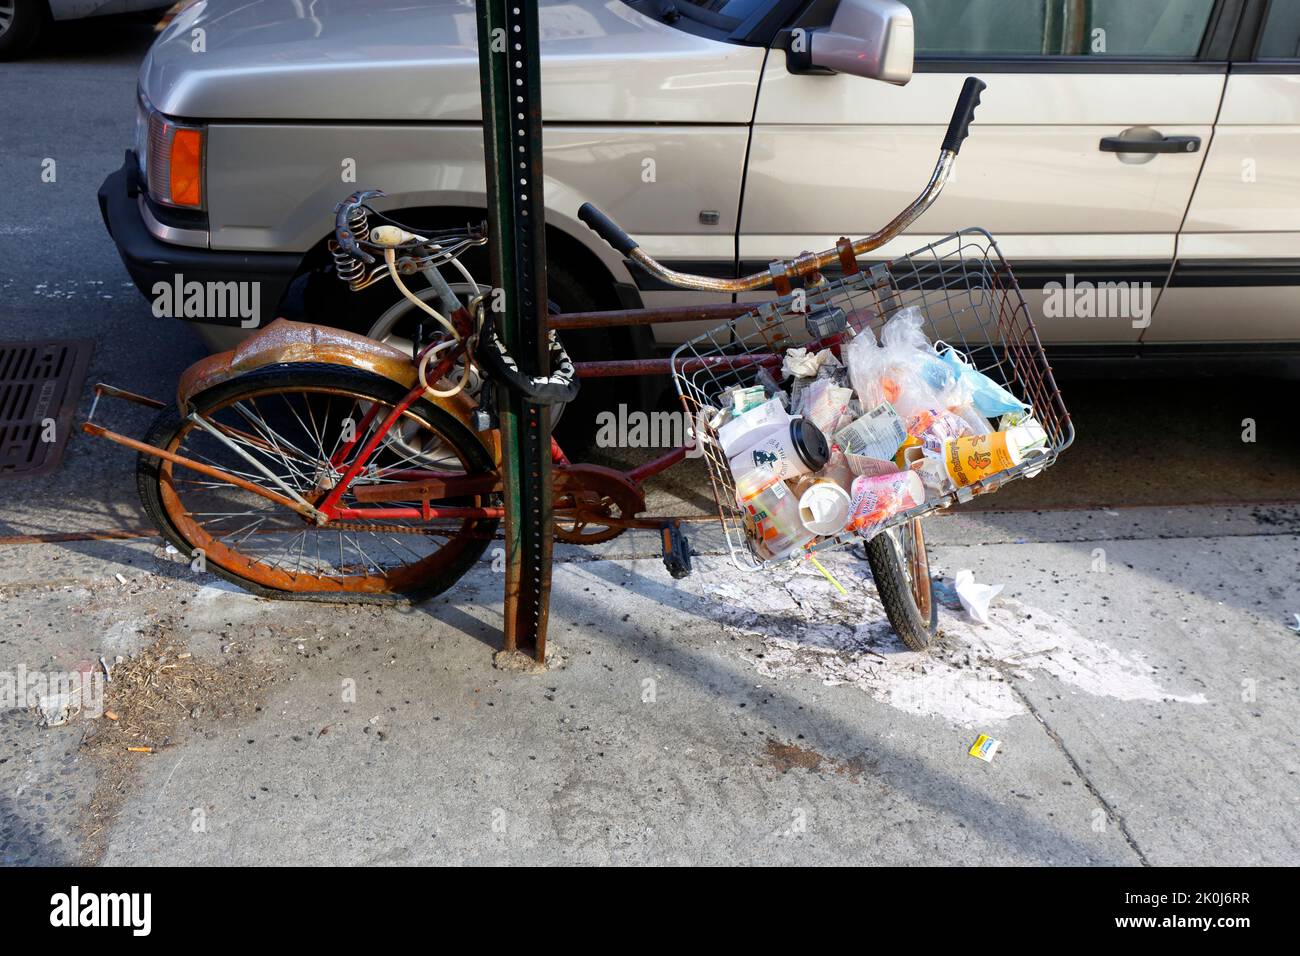 Basura y basura en la cesta del manillar de una bicicleta abandonada oxidada encadenada a un poste en la ciudad de Nueva York. Foto de stock